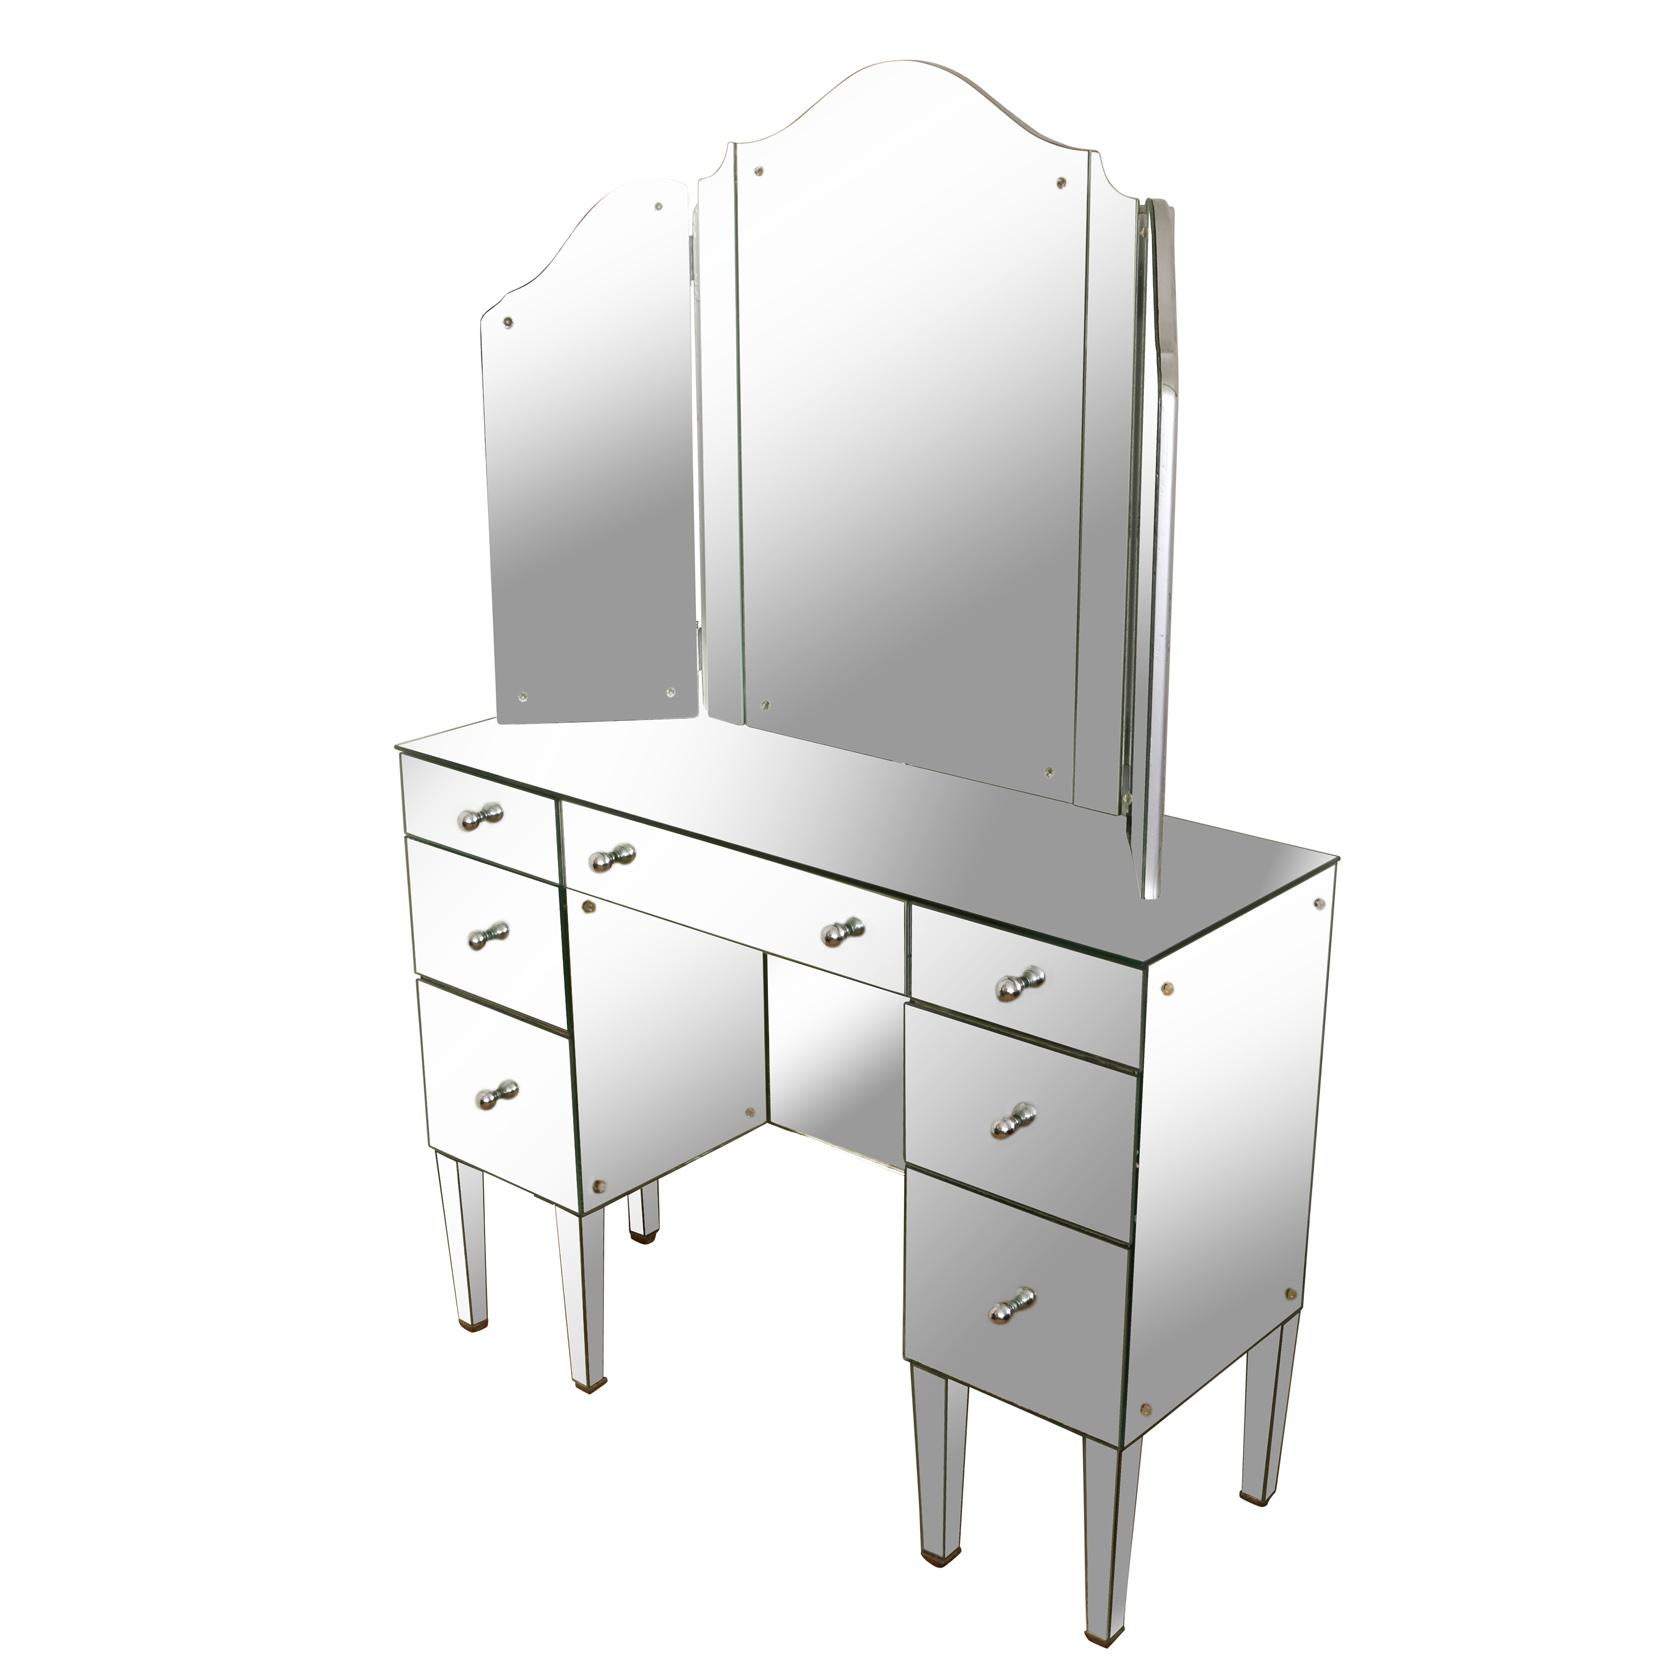 Une table de toilette vintage en miroir avec un miroir trifold attaché au plateau de la table de toilette.  Le meuble sous-lavabo à sept tiroirs est entièrement revêtu de miroir et les boutons de tiroirs sont ronds et en chrome poli.  Le miroir